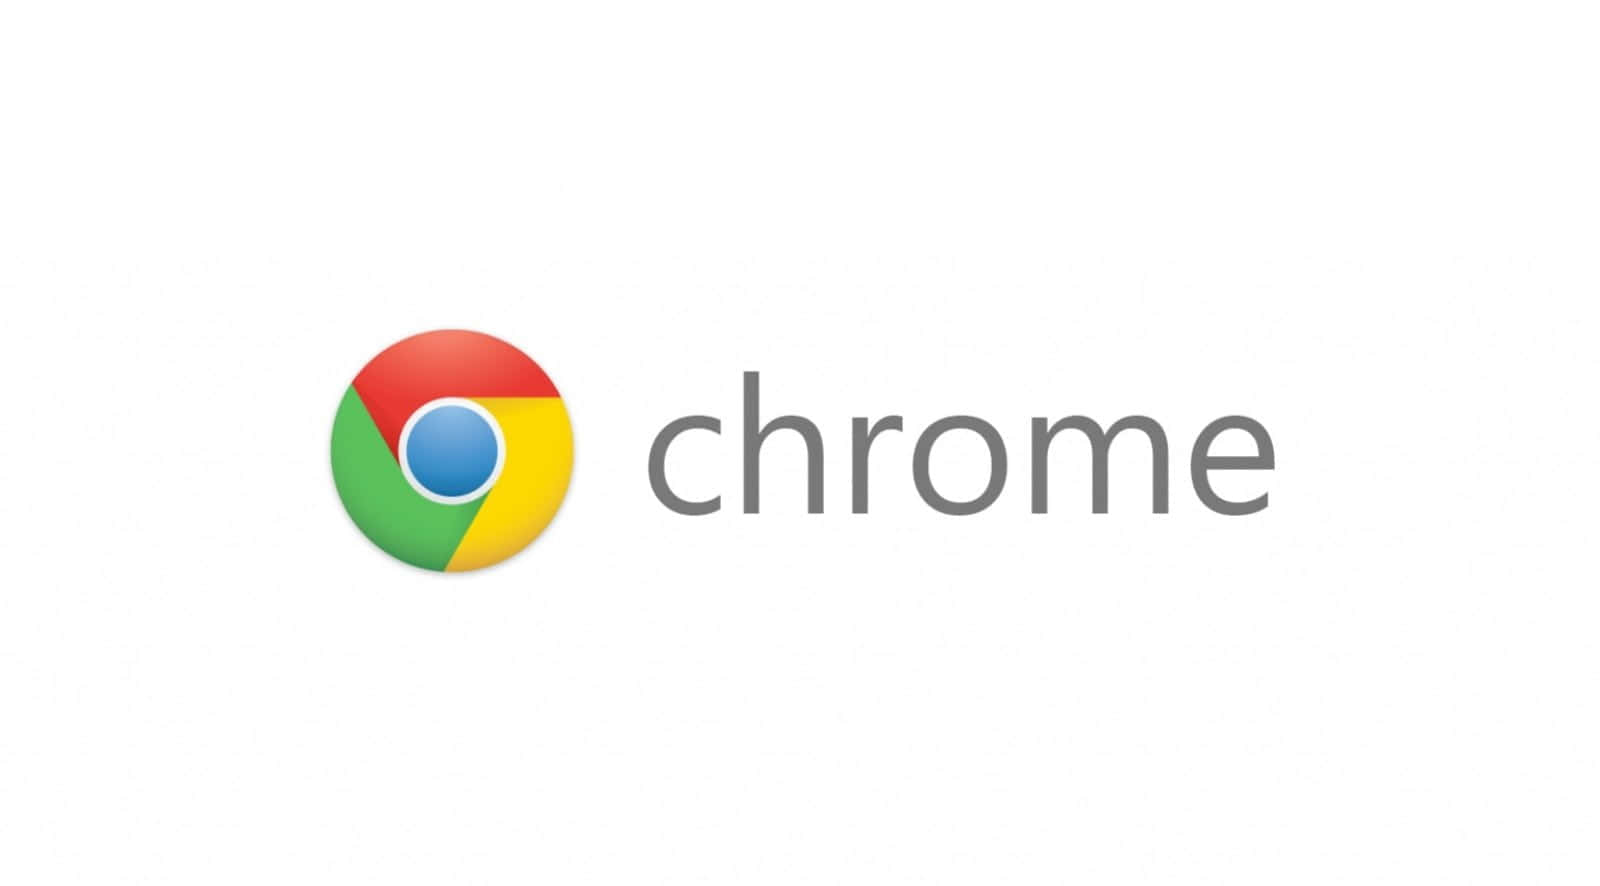 Eineweiße Spirale Auf Blauem Hintergrund Im Google Chrome Logo.